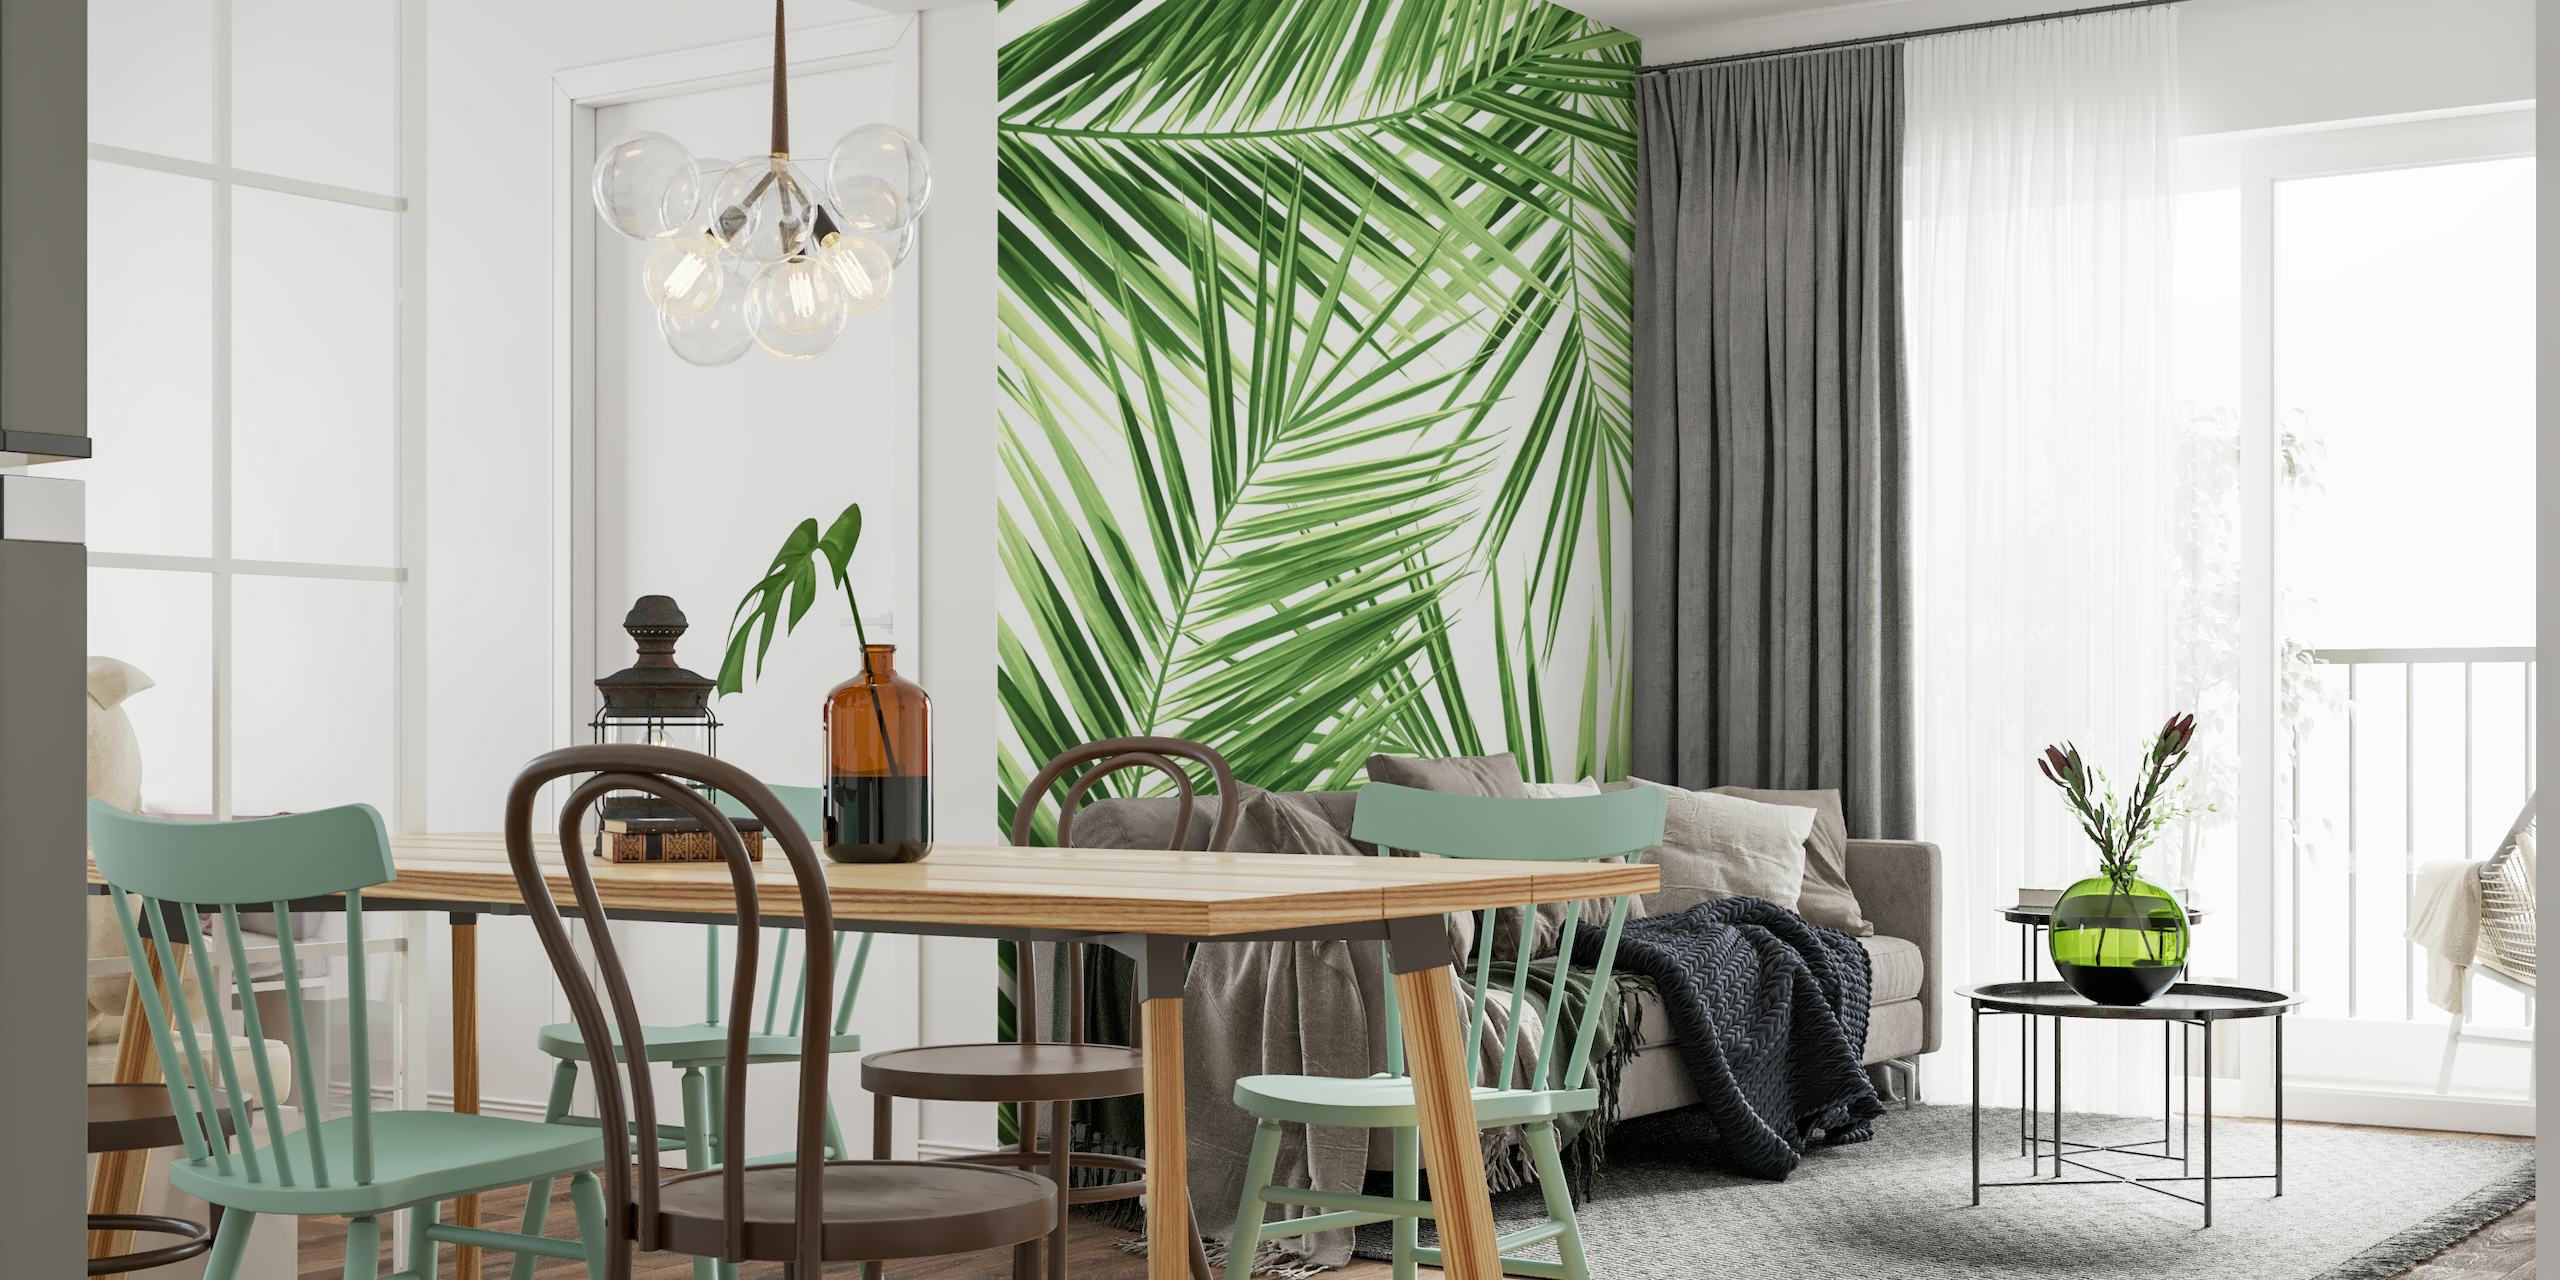 Fotomural con estampado de hojas de palmera verdes para una decoración de temática tropical